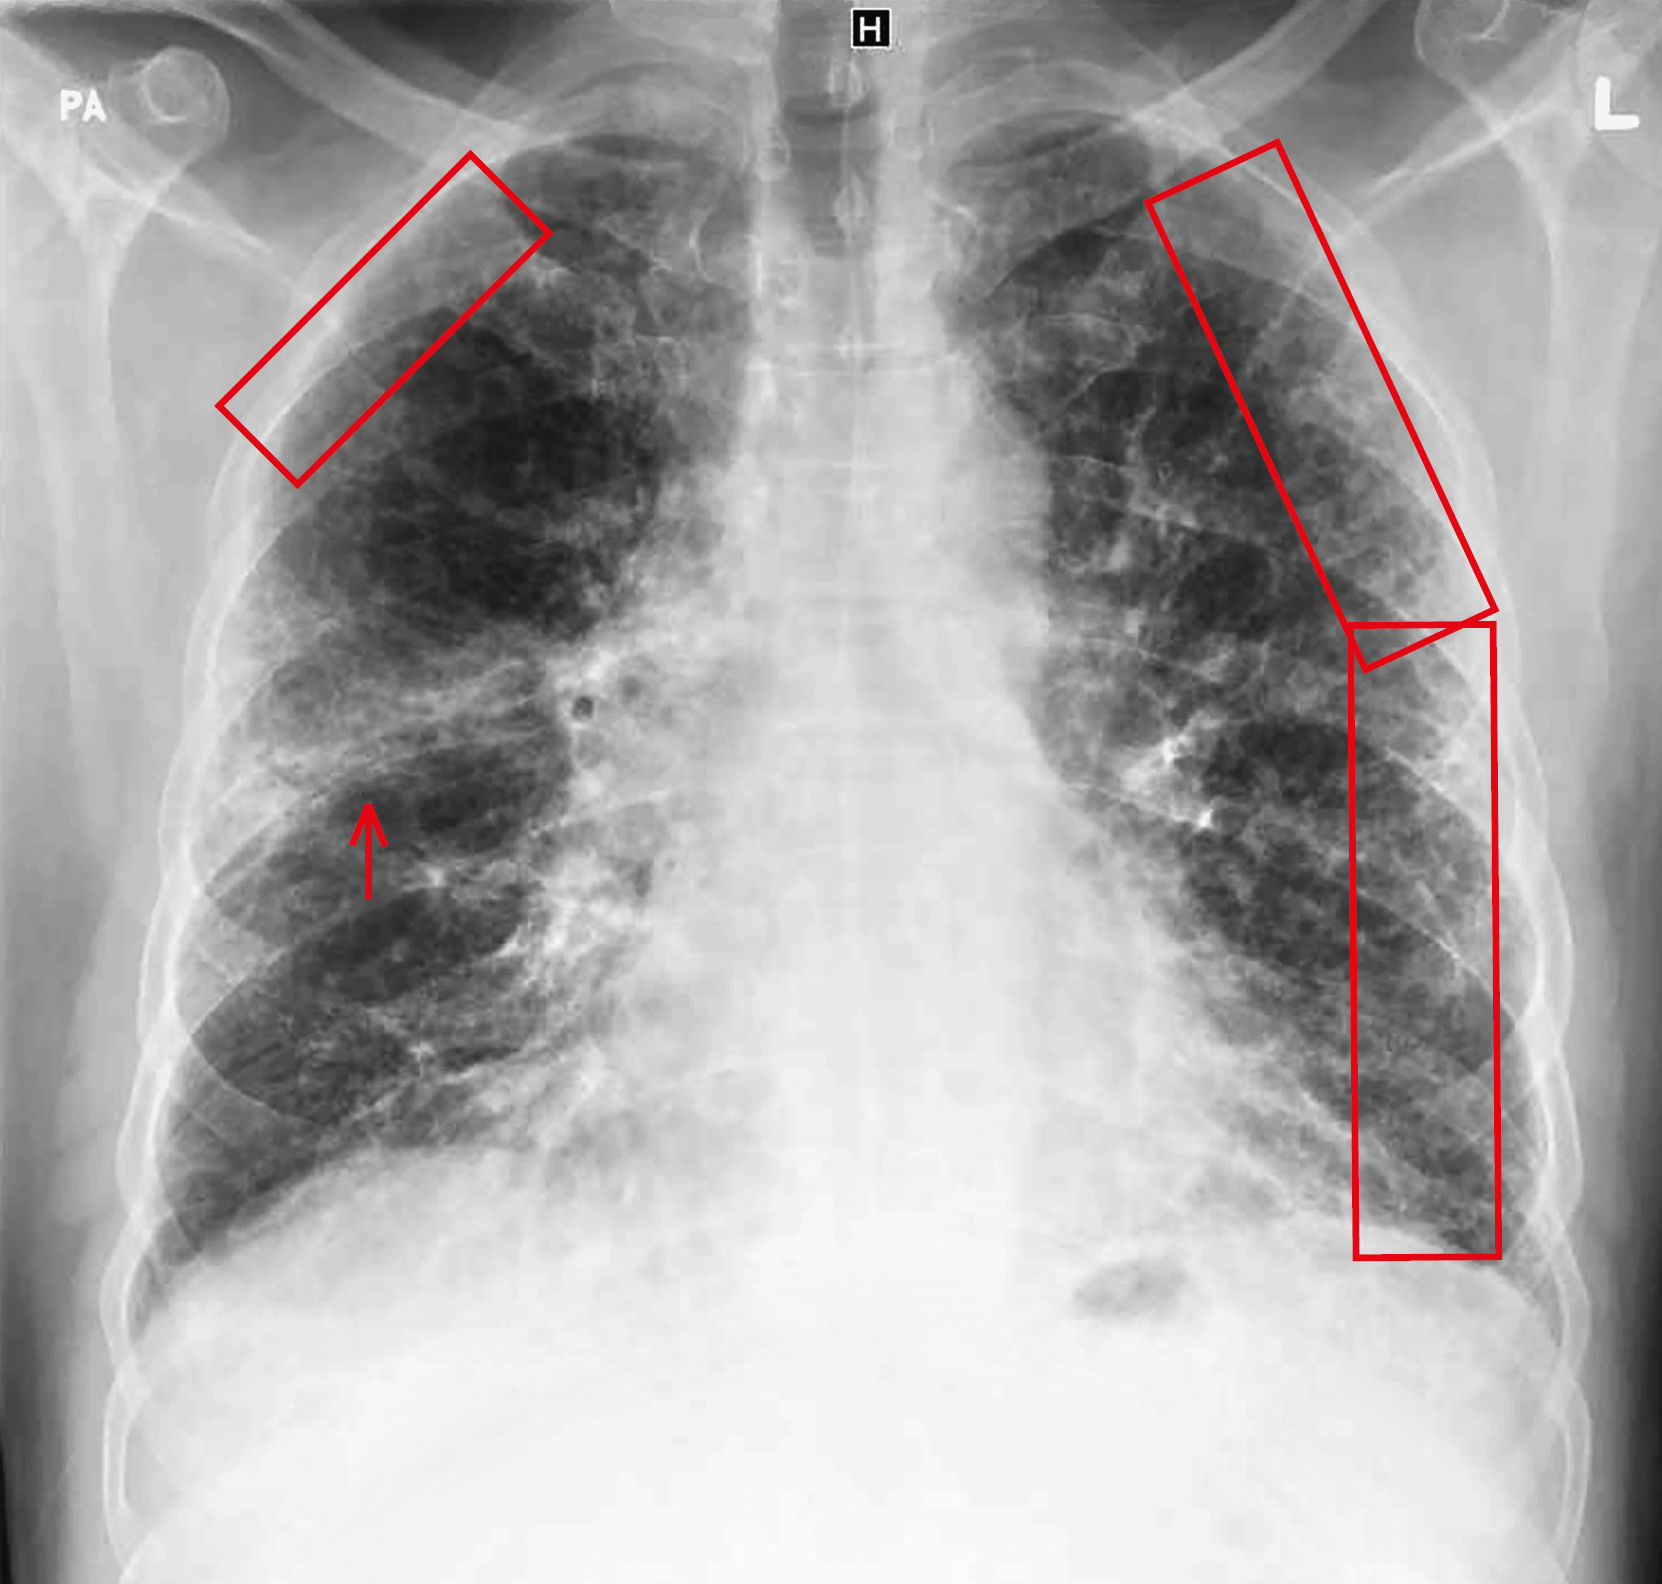  РГ грудної клітки із зазначеними ураженнями: в обох легенях помітні ретикулярні інтерстиціальні ураження (прямокутники), які розташовані периферично і не охоплюють центральні відділи легеневих полів. У правій легені також видно ділянку ущільнення, обмежену знизу горизонтальною щілиною (стрілка) 